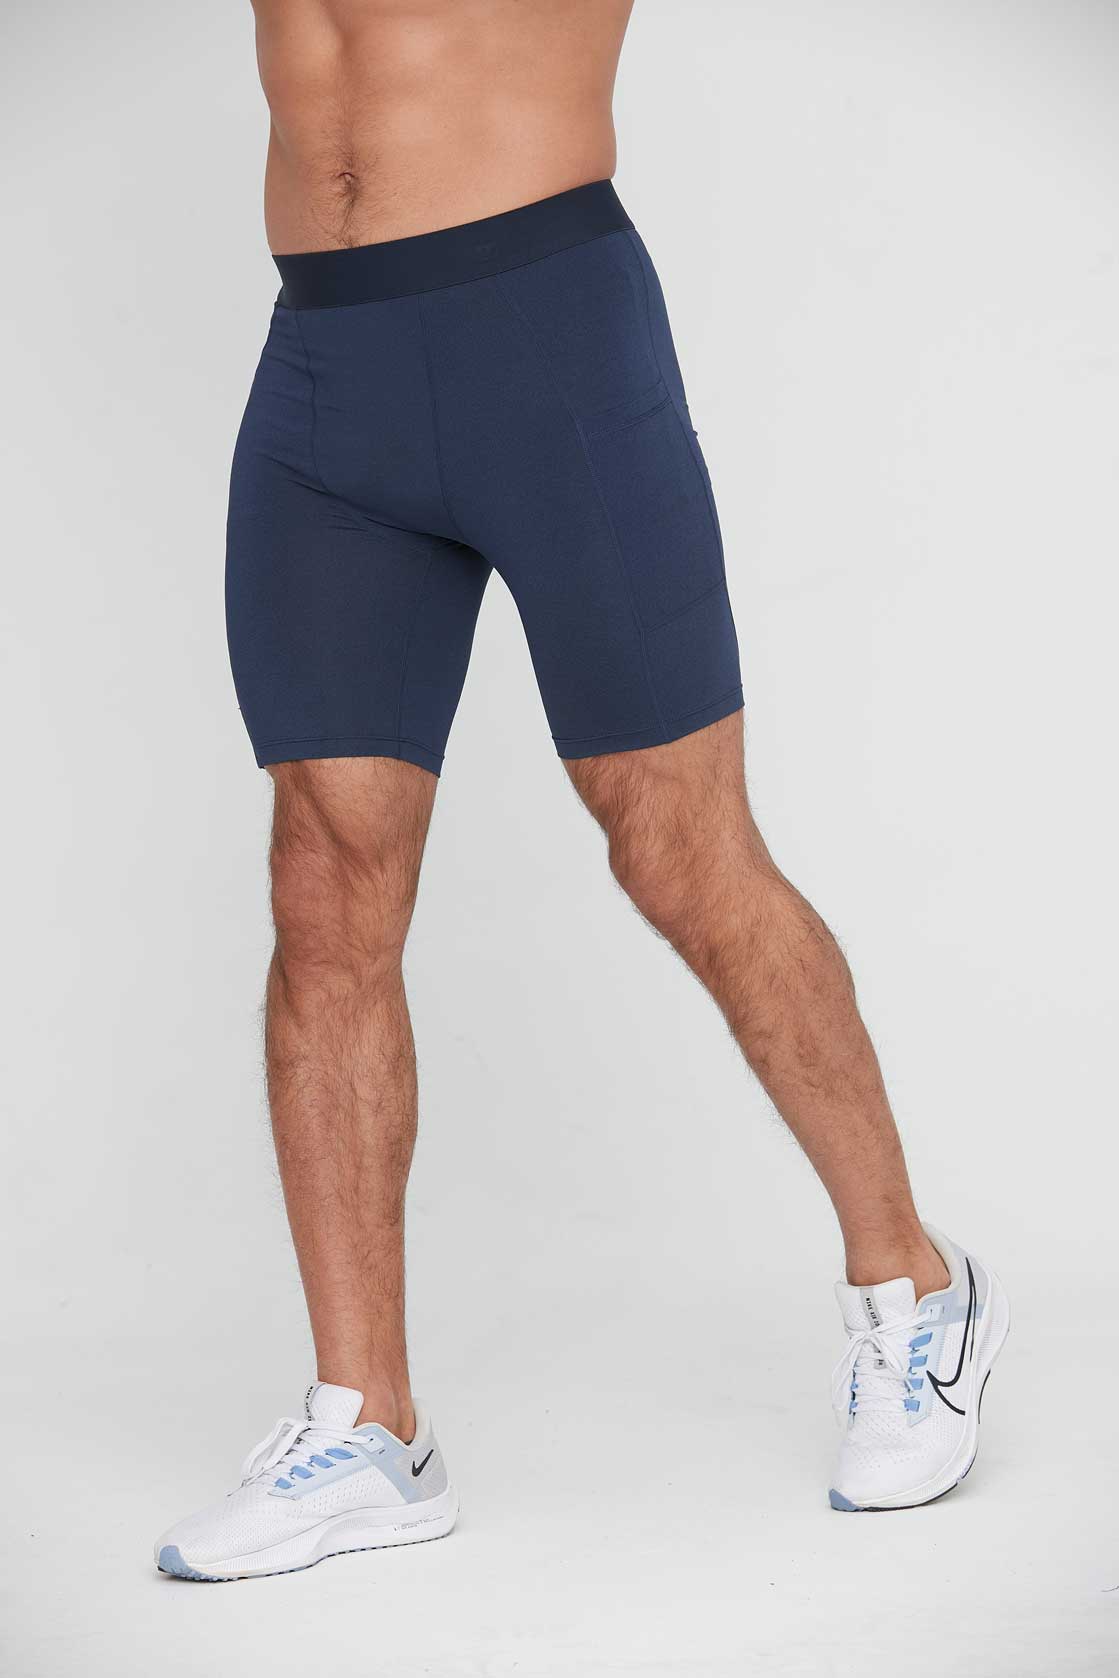 HRG1011-Men's tight-fitting sports capri pants, basketball